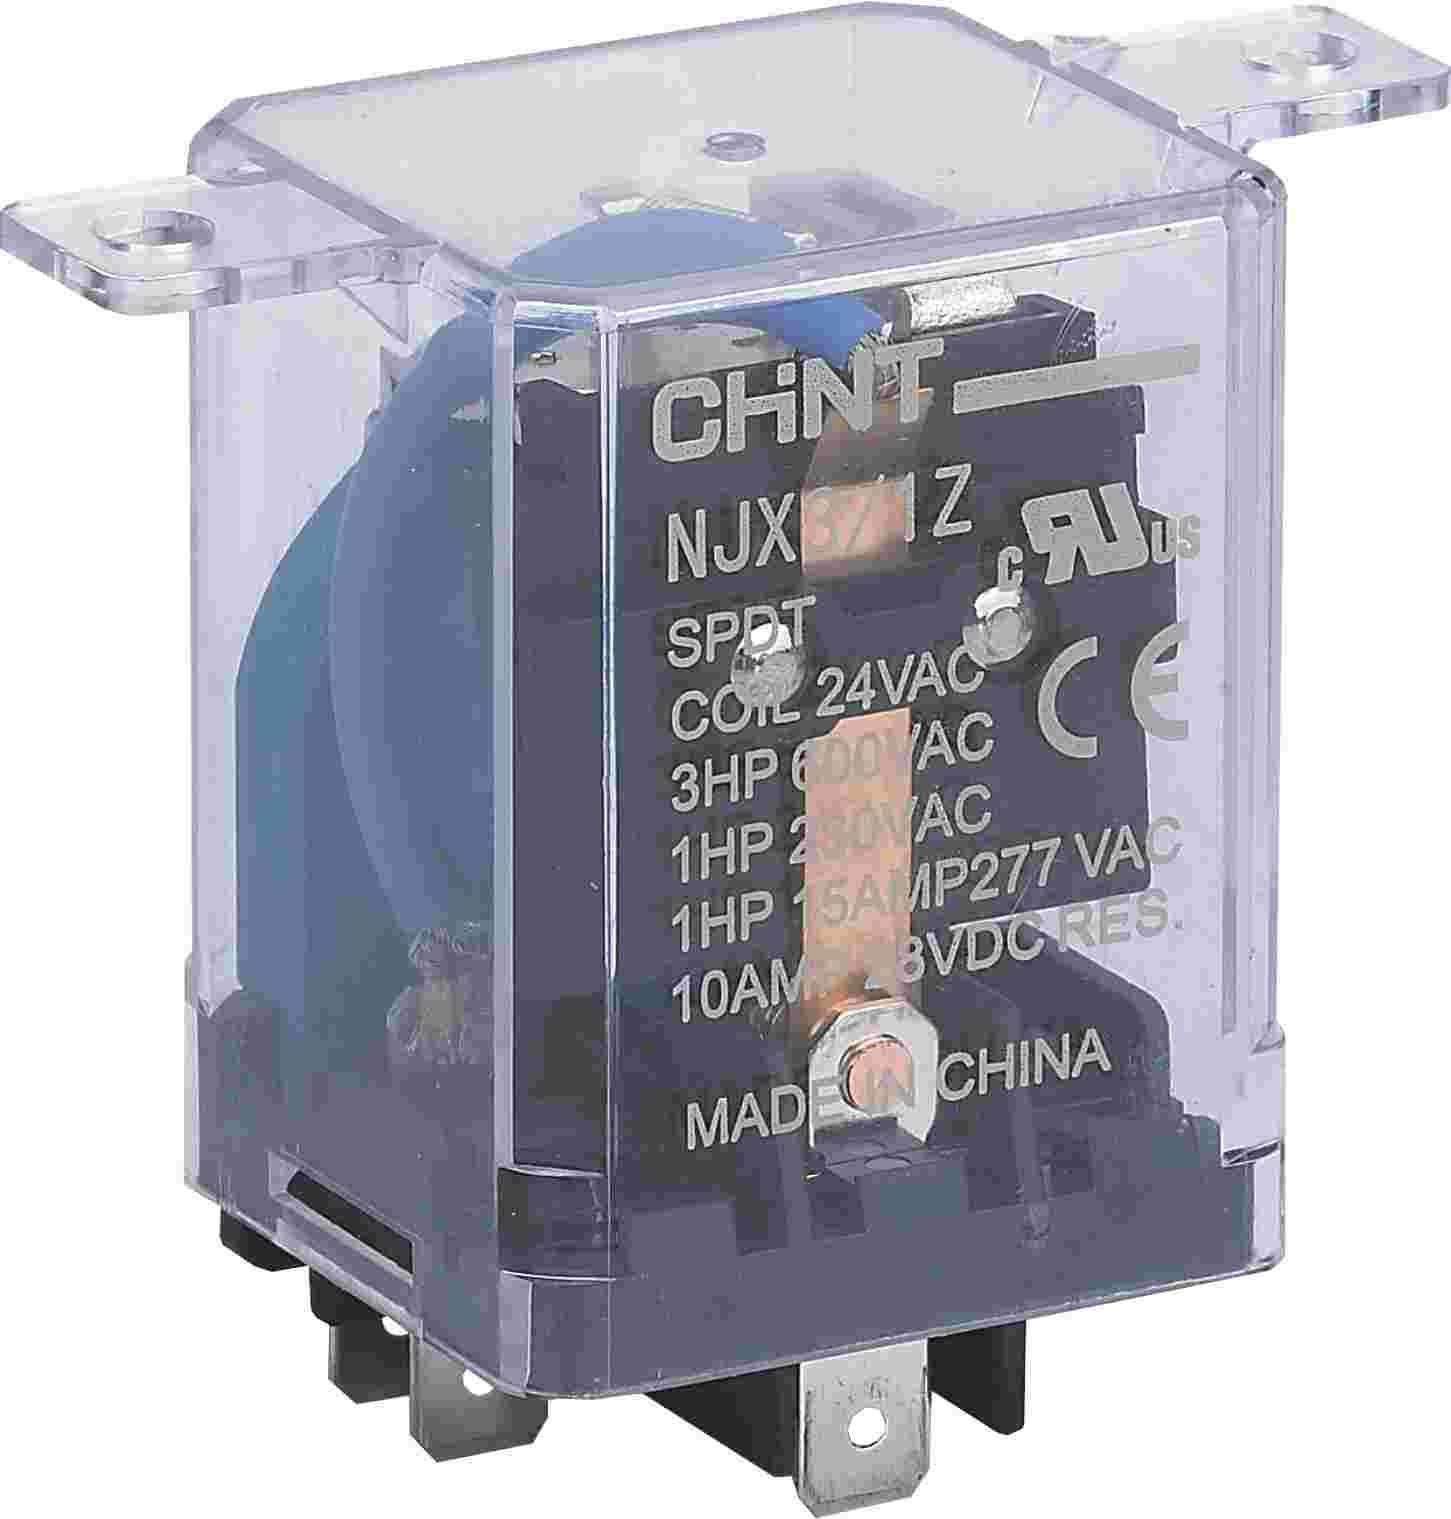 NJX3-1Z 小型电磁继电器侧俯图.png